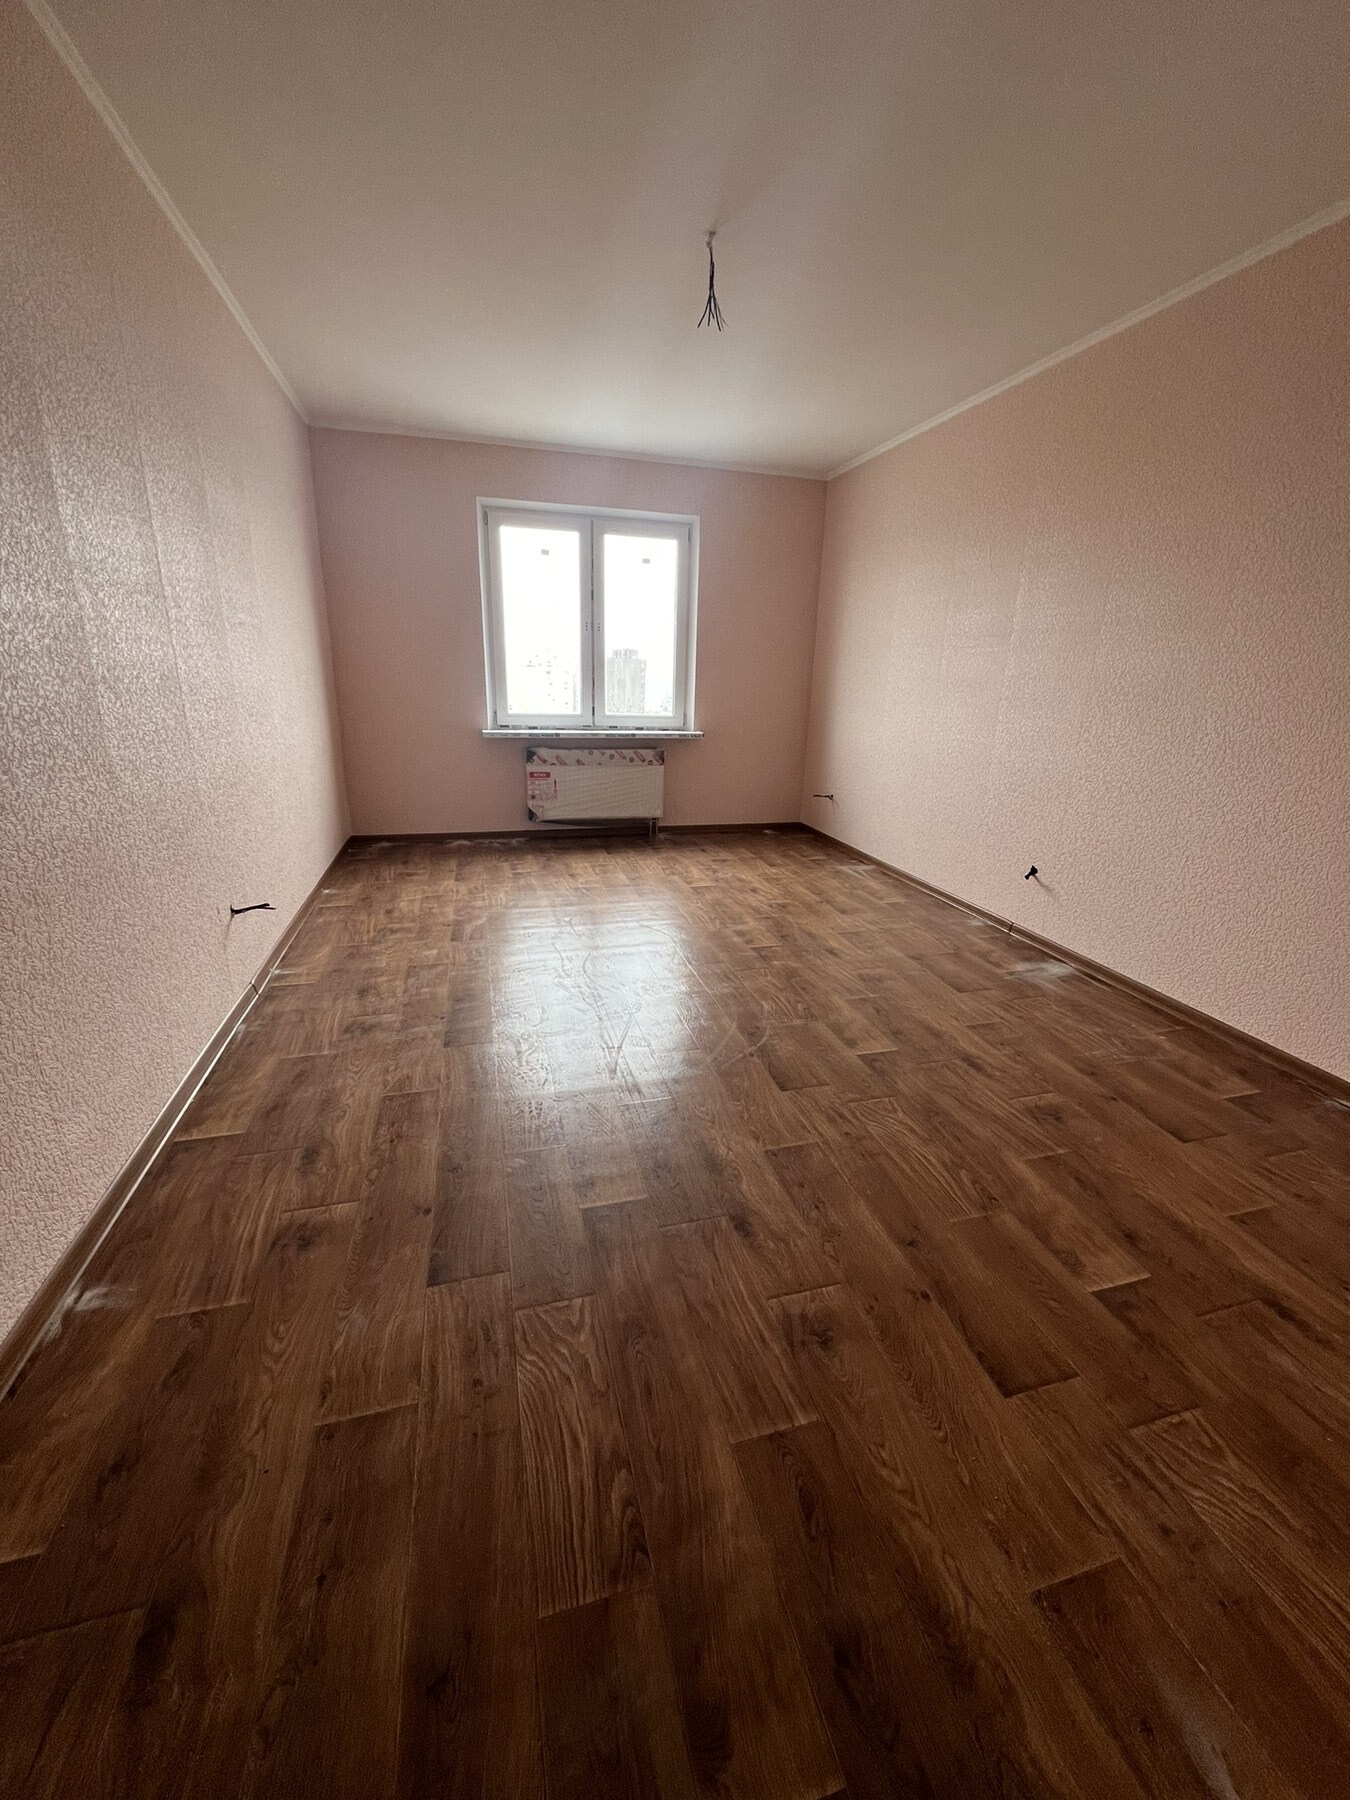 Продажа 2-комнатной квартиры 66.6 м², Коноплянская ул., ул.22А, ЖК Navigator-2